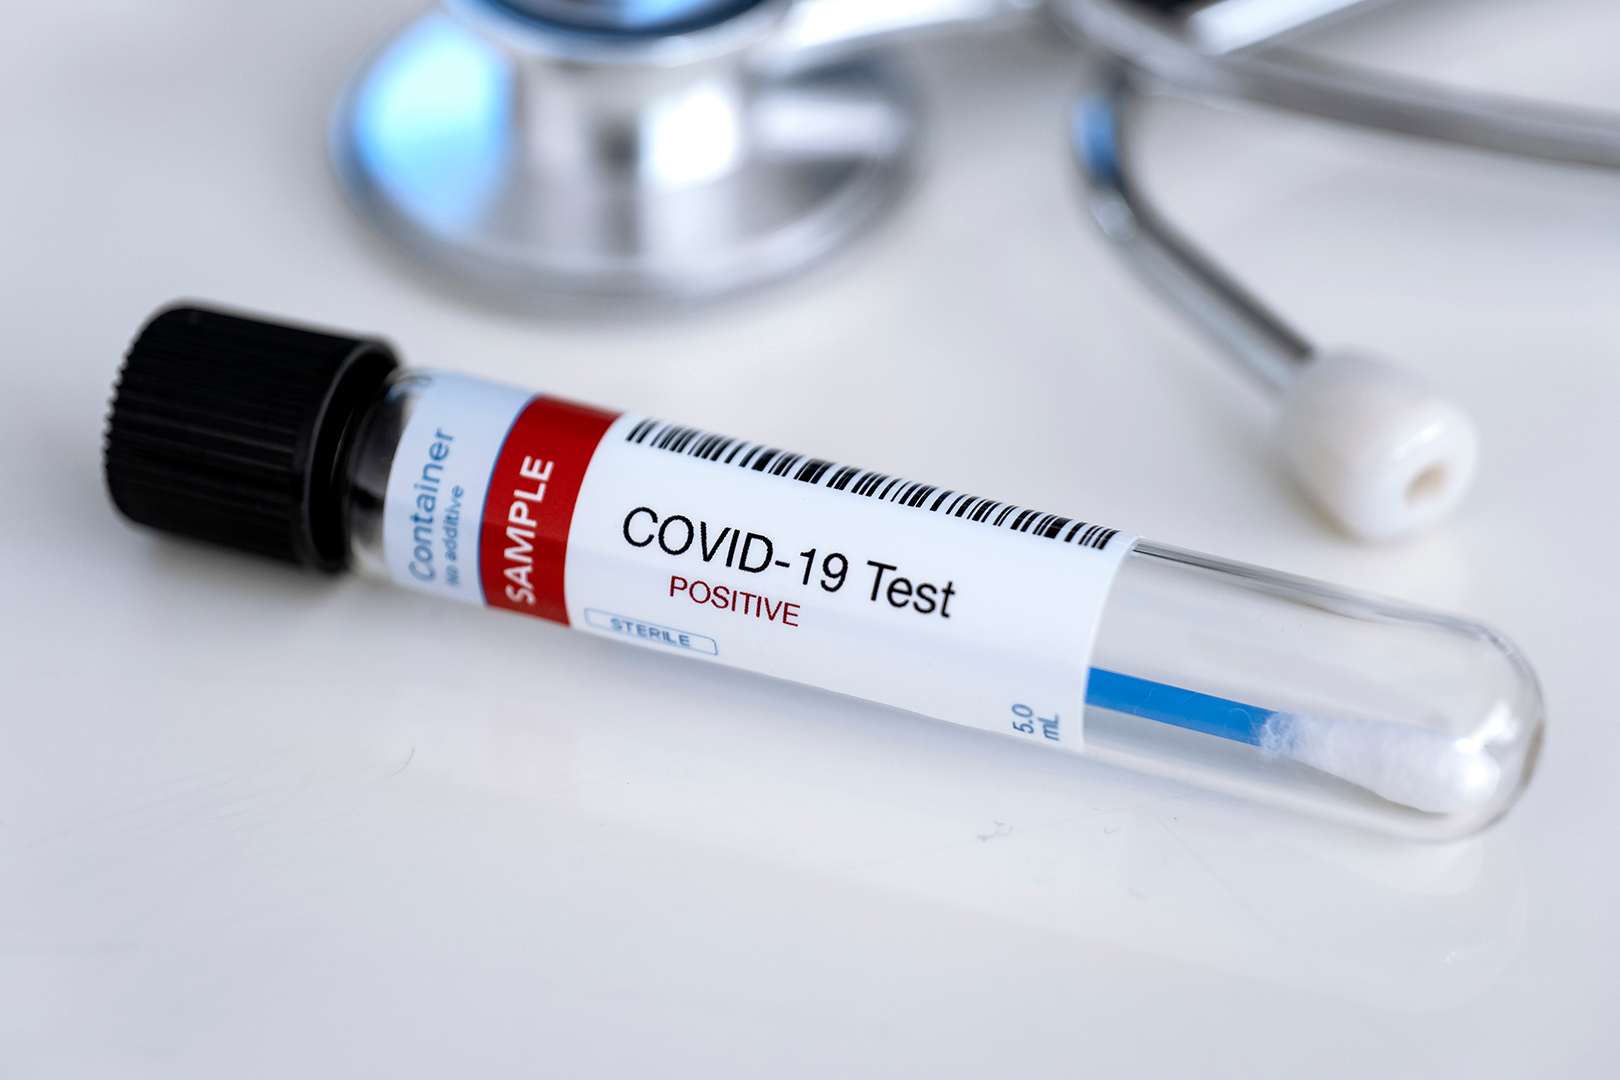 Aseguradoras cubrirán pruebas caseras de COVID-19 en Estados Unidos2 min read